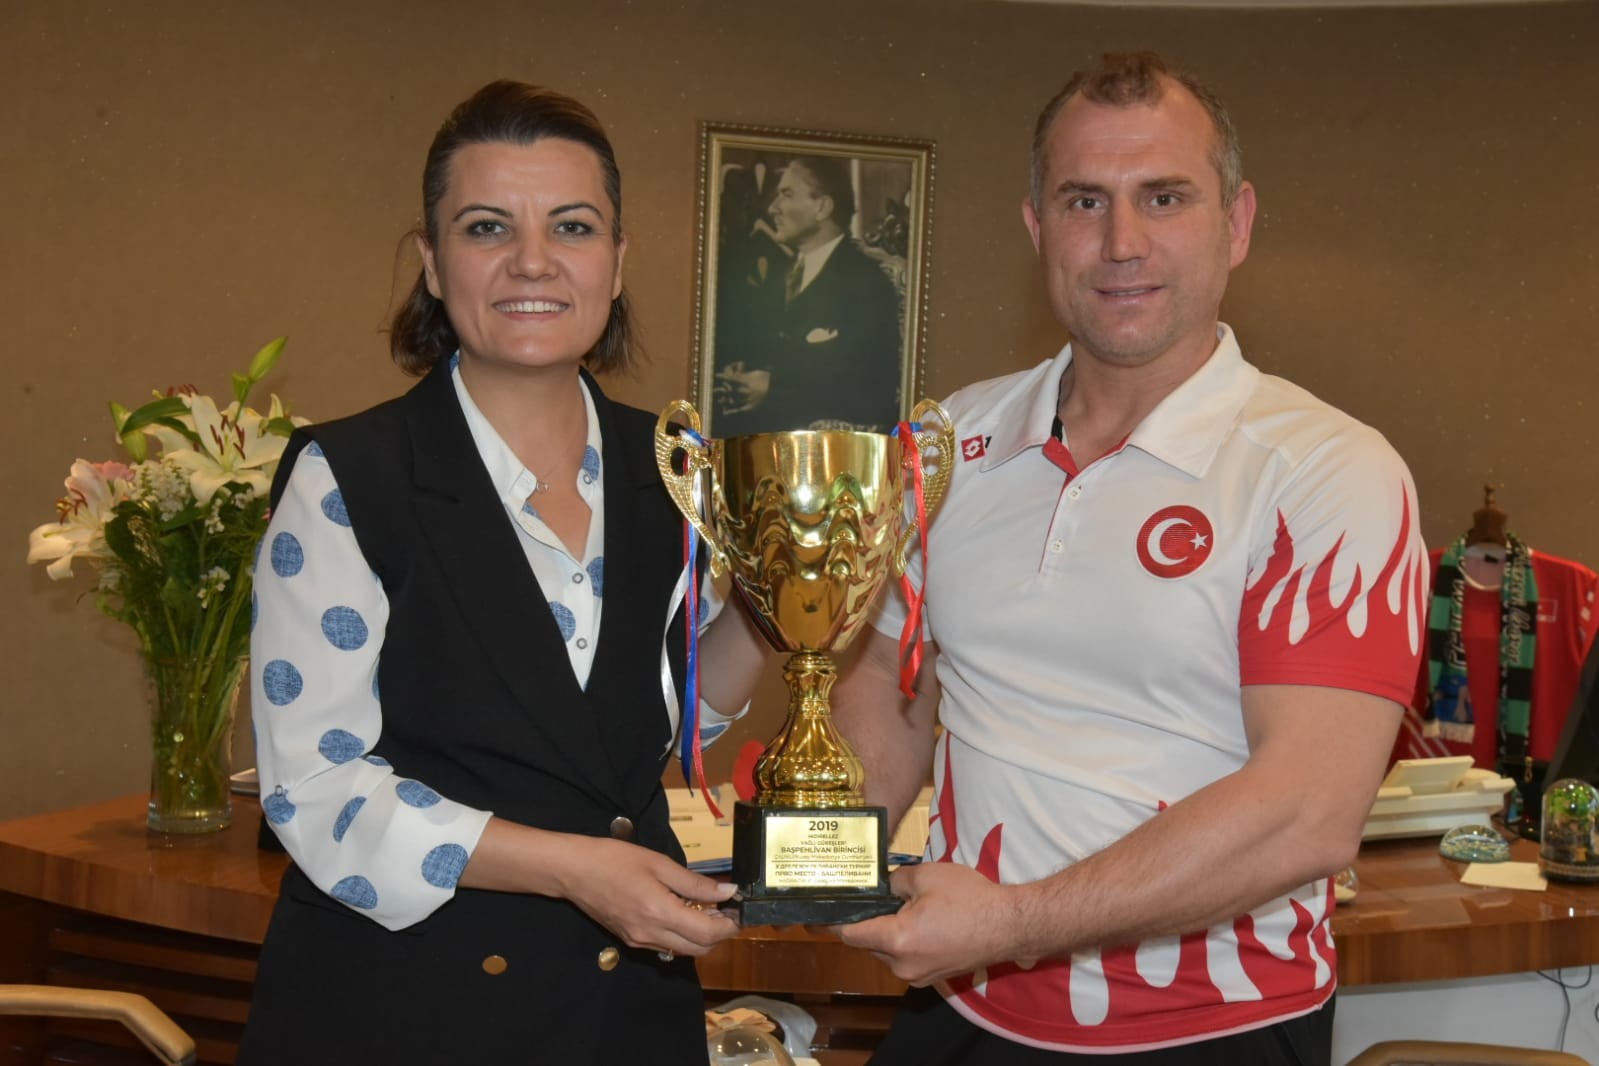 Balkan Şenliklerinin Güreş Şampiyonu, İzmitli sporcu oldu